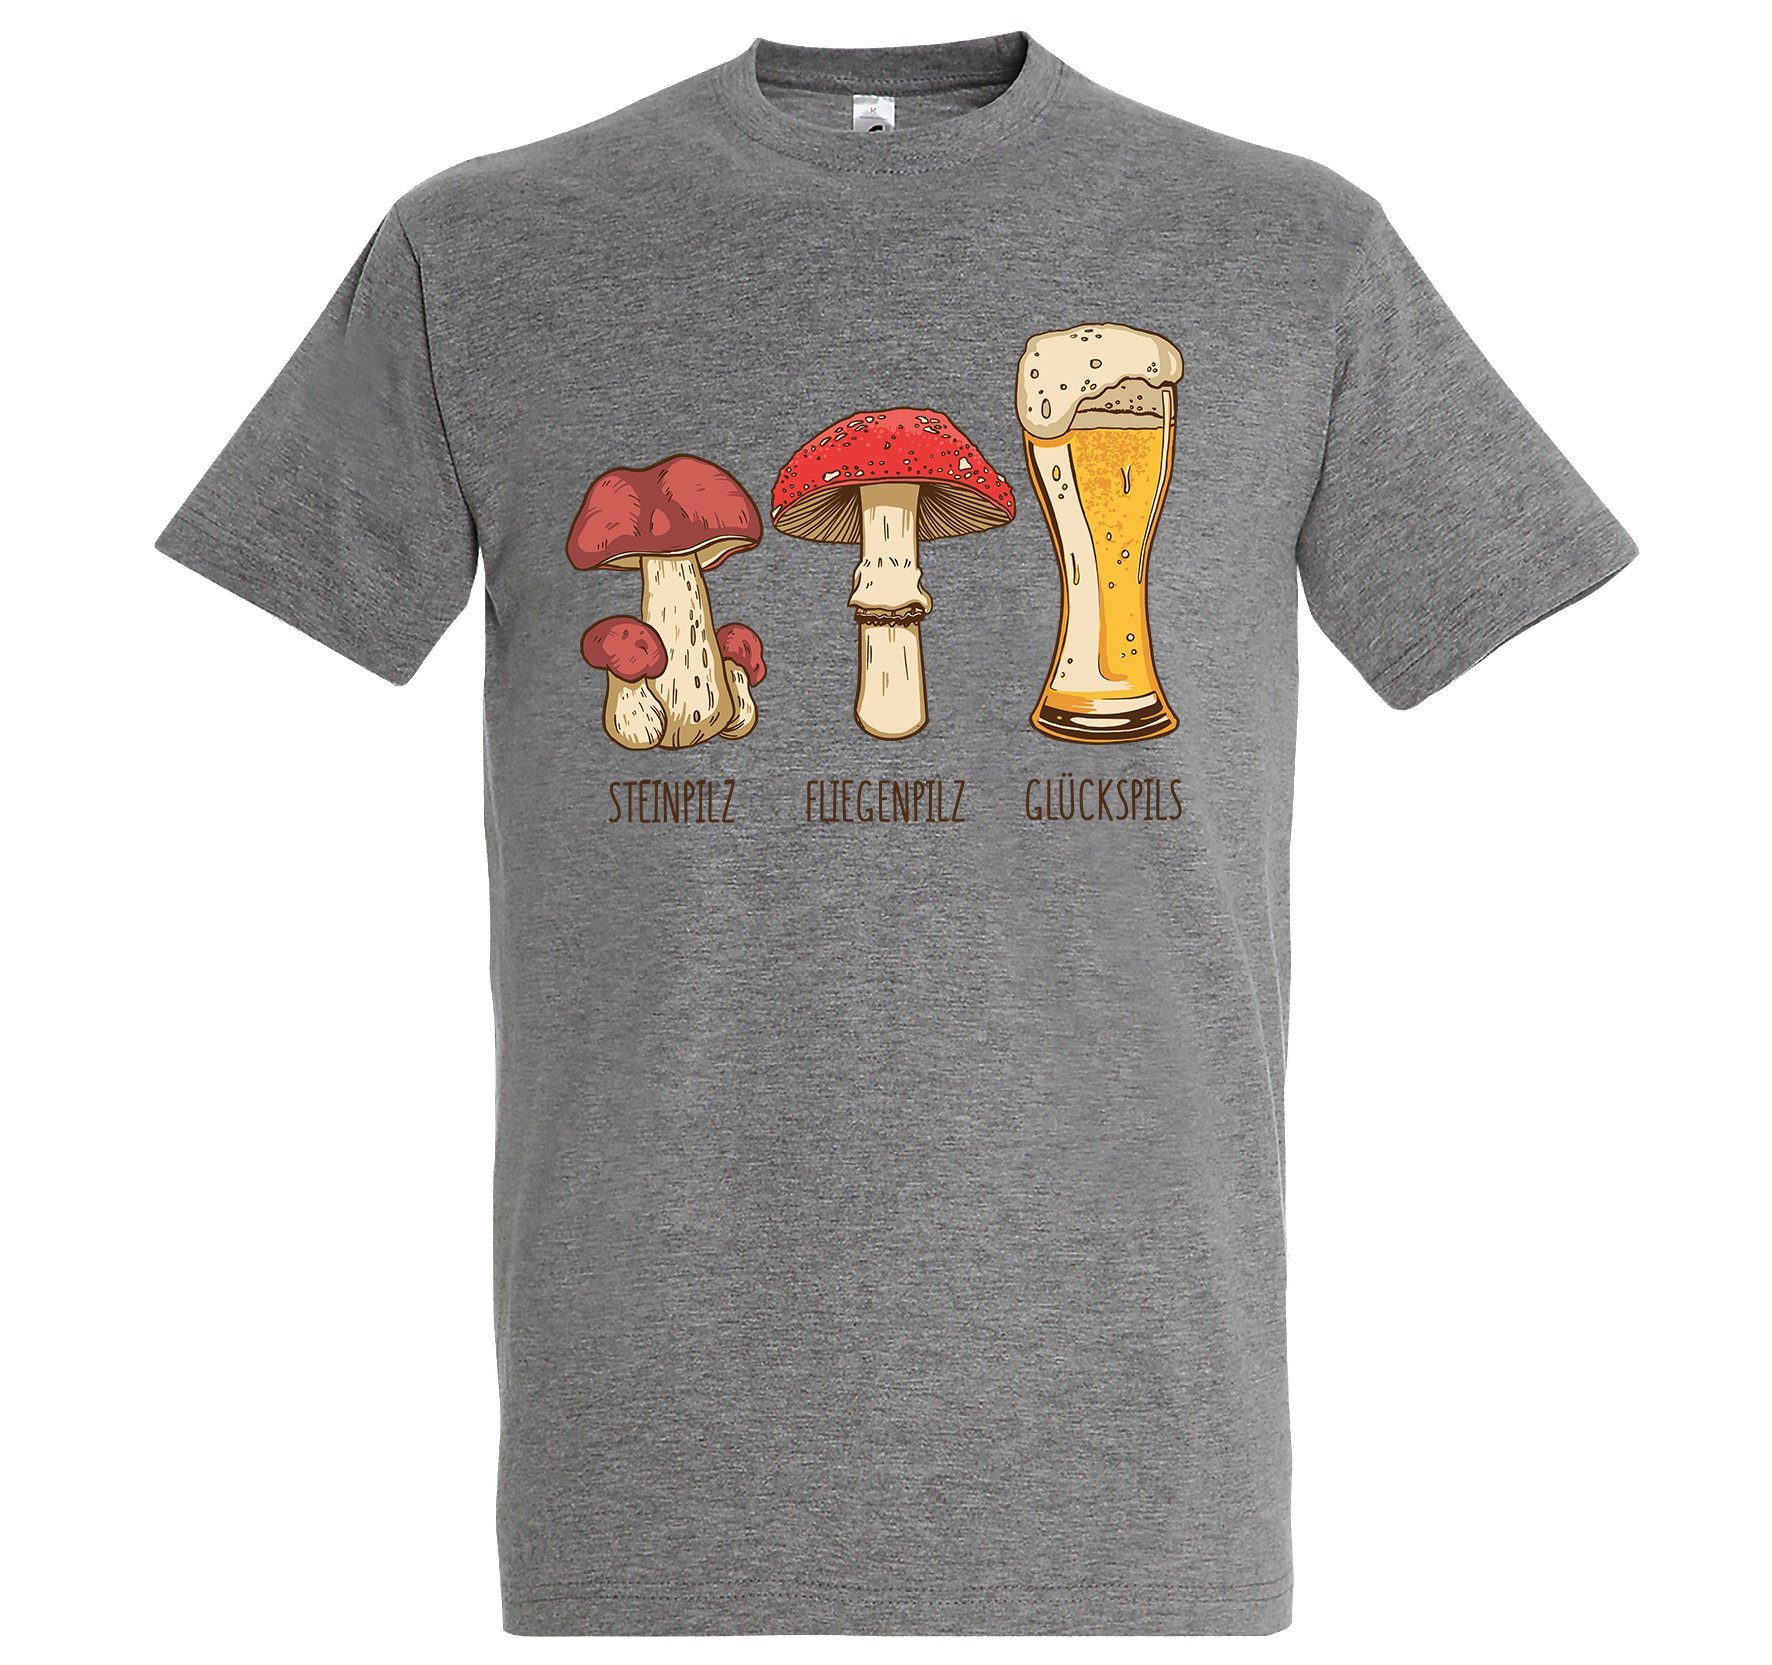 lustigem Logo T-Shirt Herren mit Grau Glückspils Aufdruck Youth Designz Print-Shirt